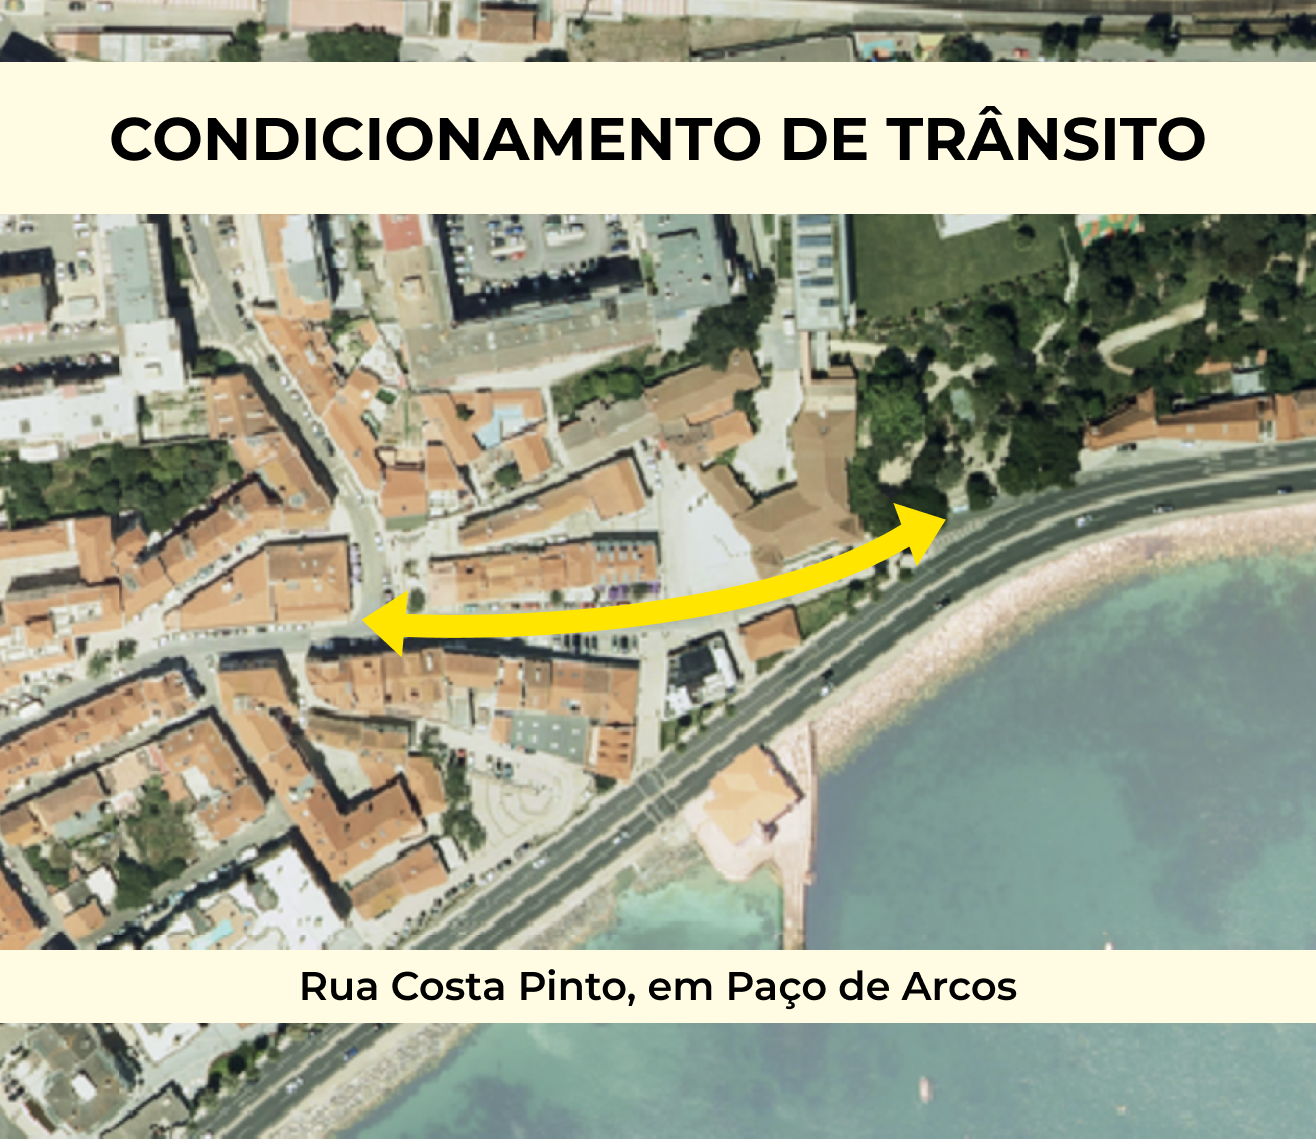 Condicionamento de trânsito na Rua Costa Pinto, em Paço de Arcos